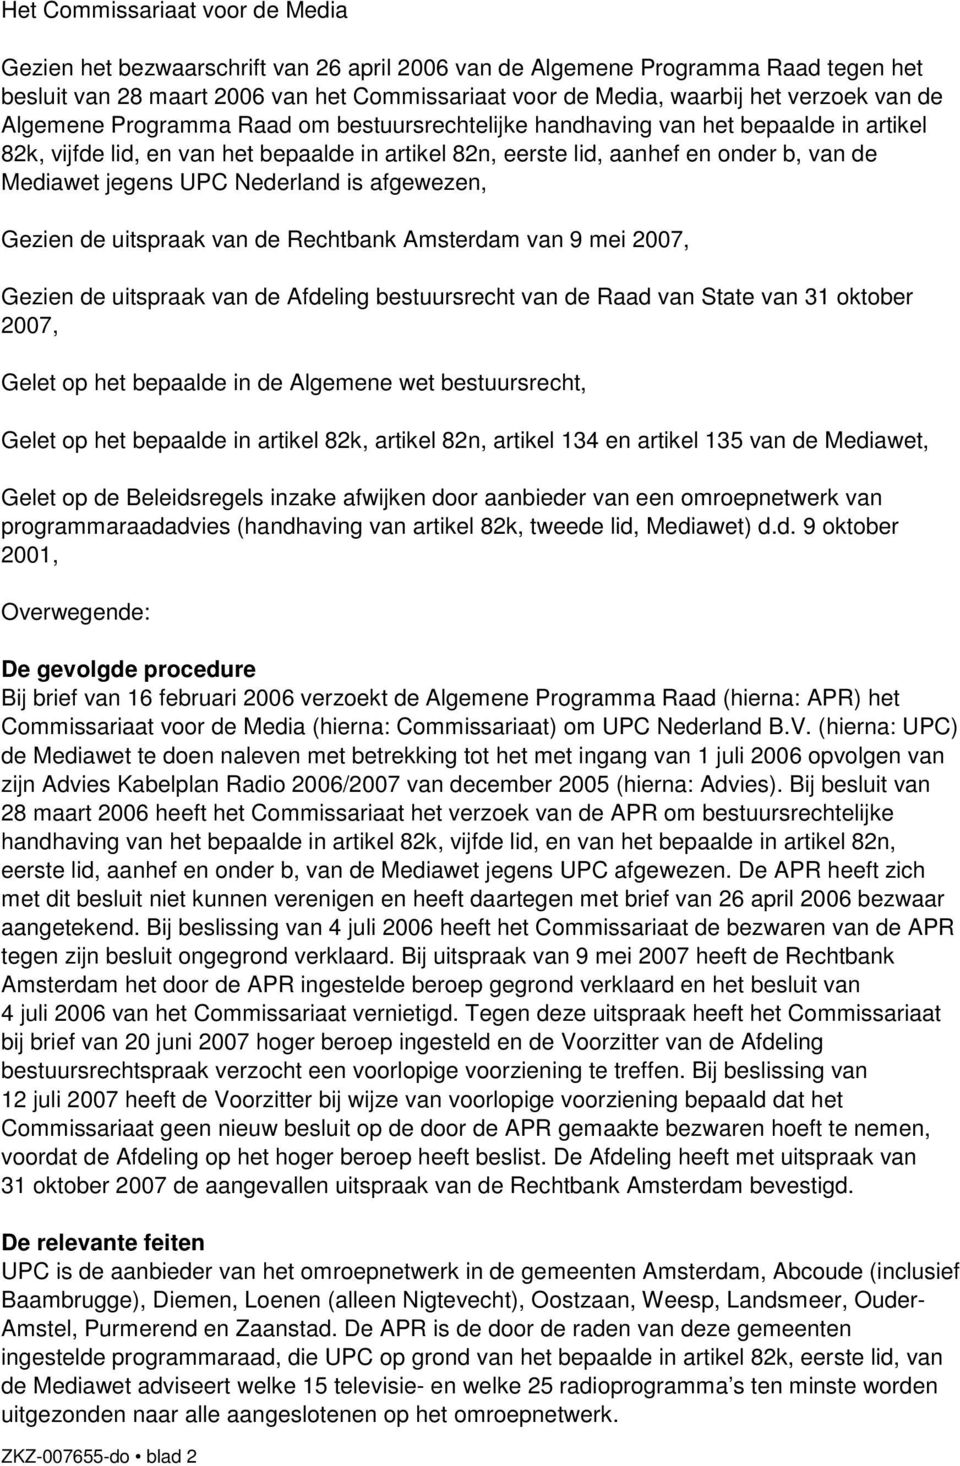 UPC Nederland is afgewezen, Gezien de uitspraak van de Rechtbank Amsterdam van 9 mei 2007, Gezien de uitspraak van de Afdeling bestuursrecht van de Raad van State van 31 oktober 2007, Gelet op het